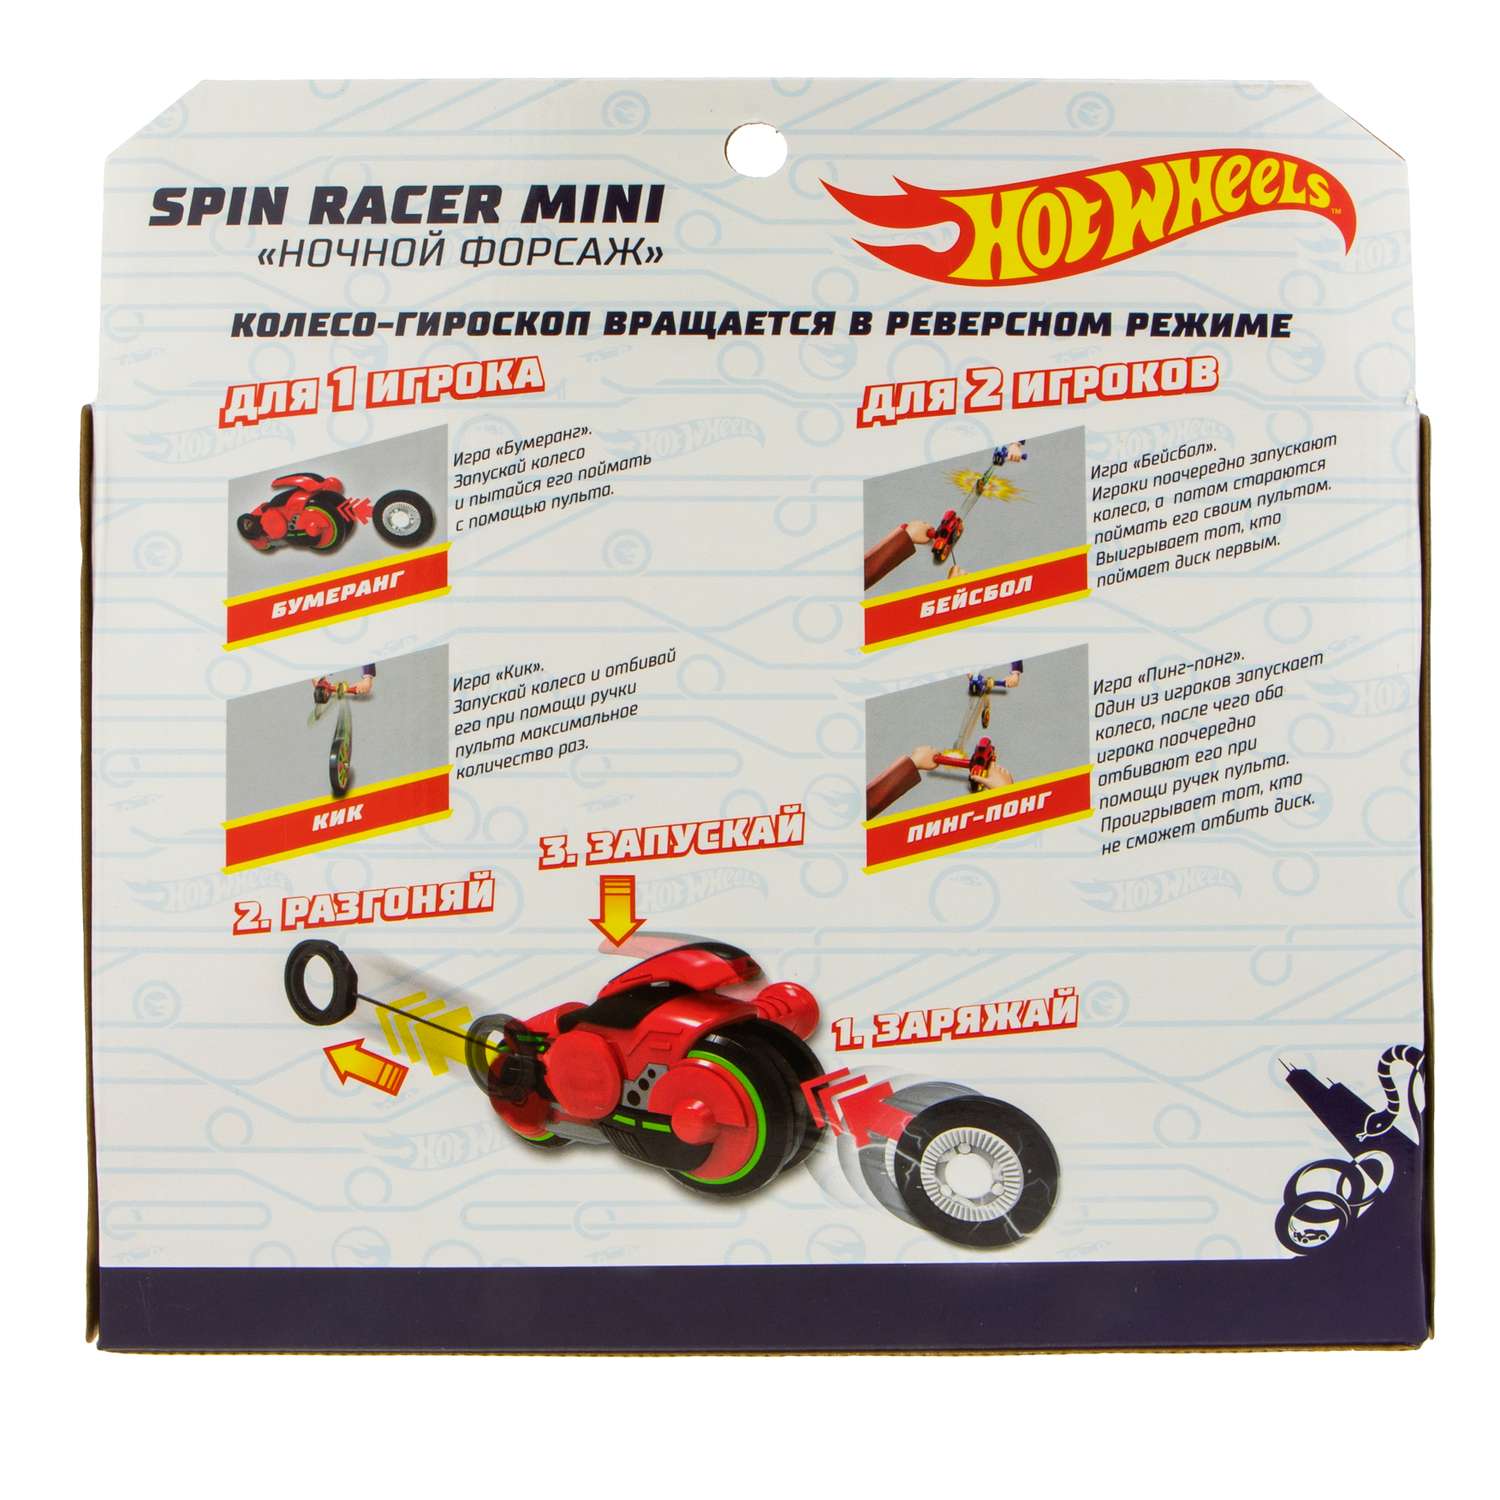 Игровой набор Hot Wheels Spin Racer Рыжий Ягуар игрушечный мотоцикл с колесом-гироскопом Т19368 - фото 12